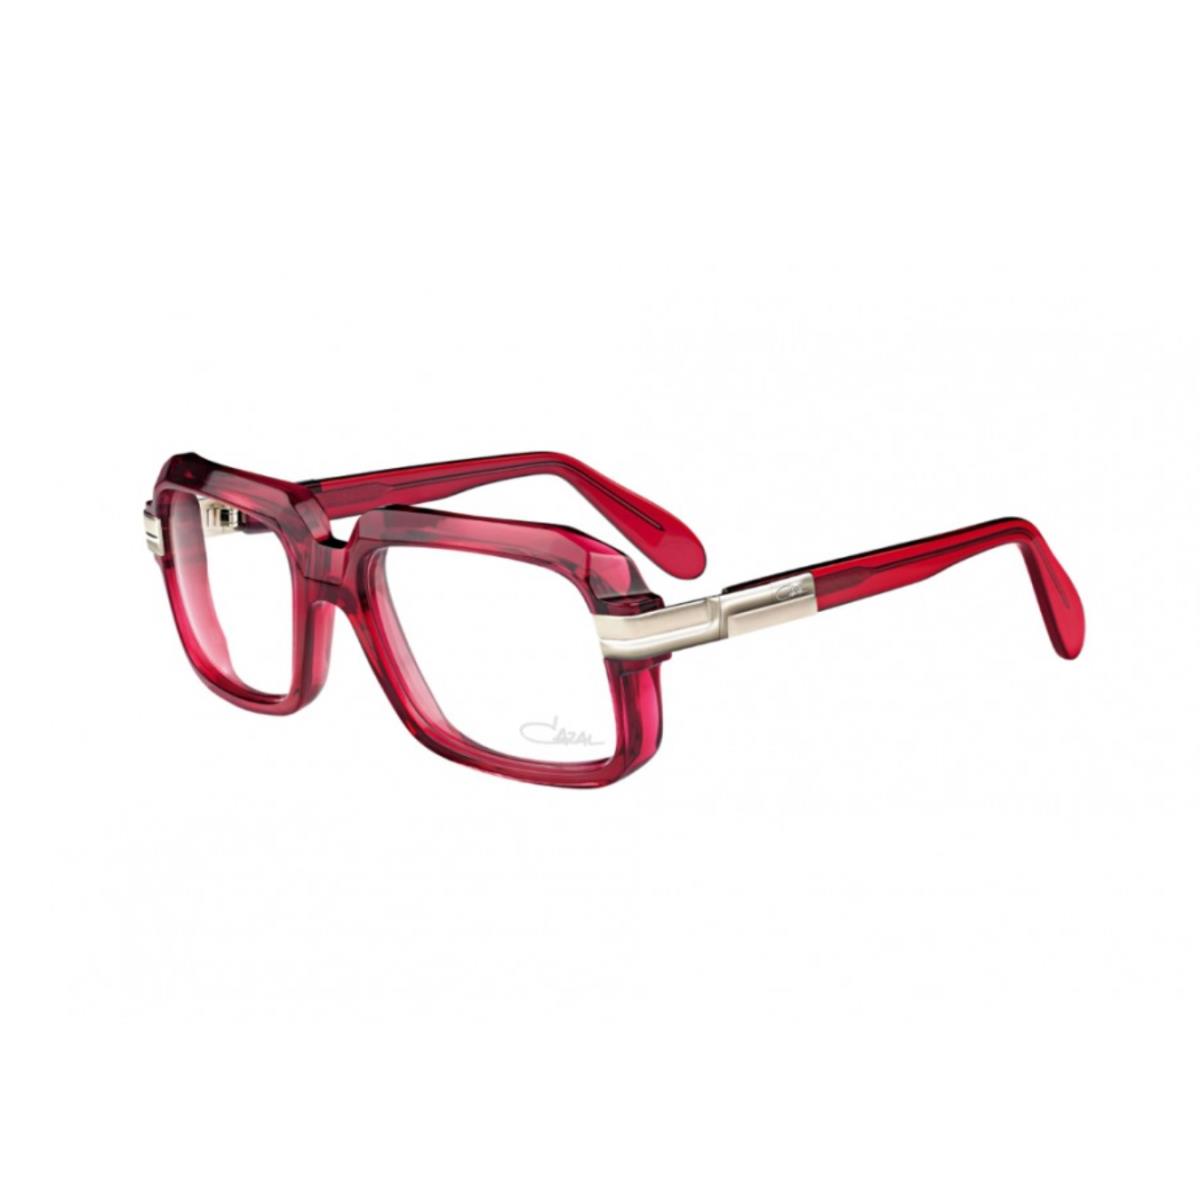 Cazal Eyeglasses 607 006 Red Designer Full Rim Frames 56MM Rx-able